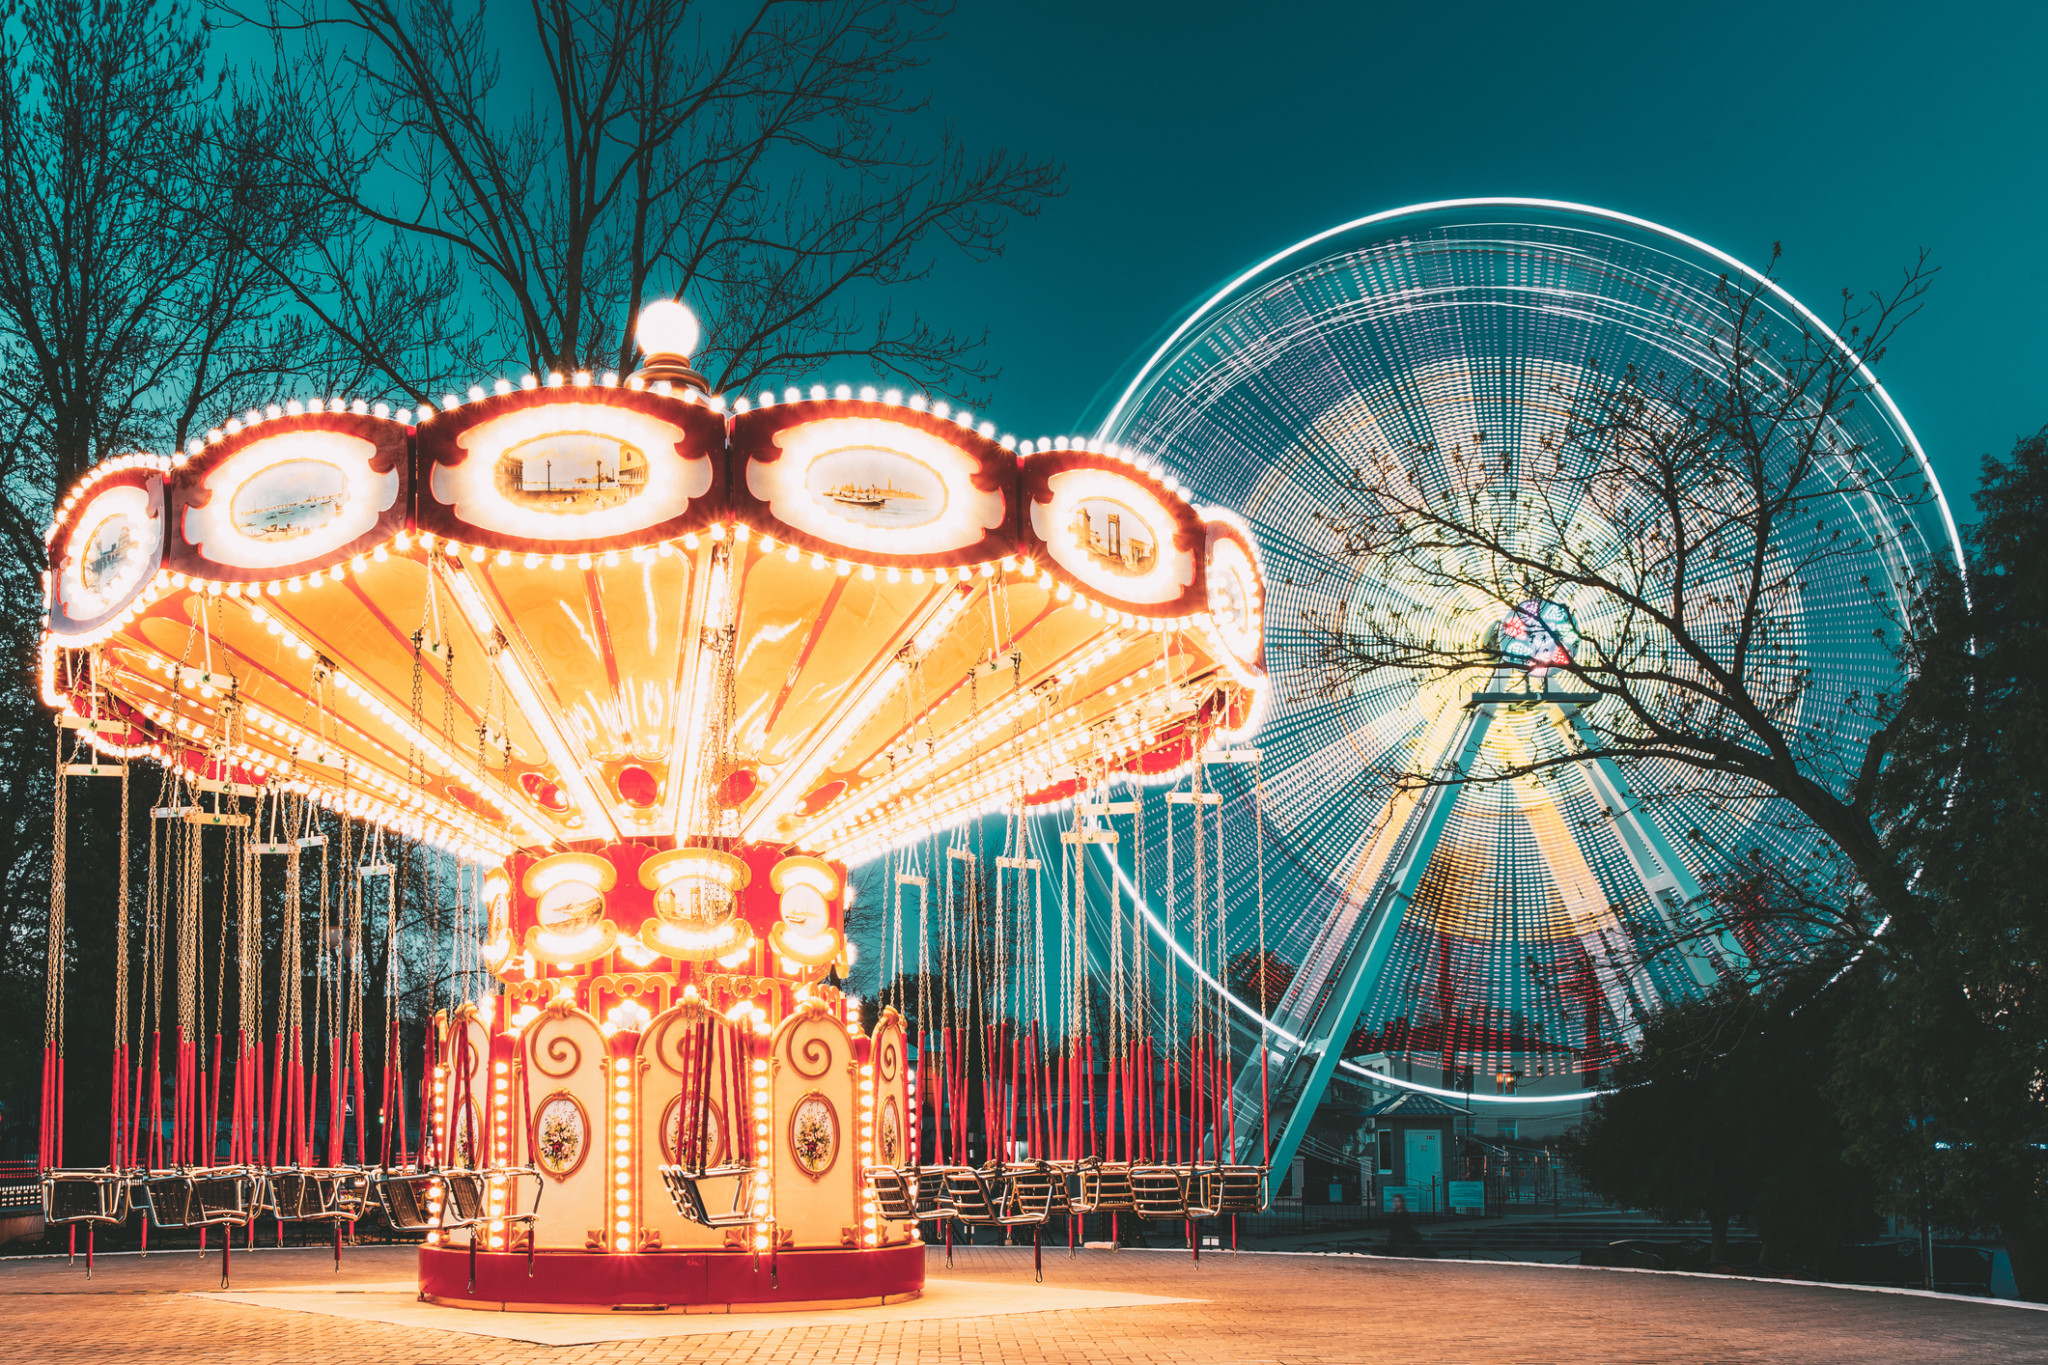 Amusement park rides lit up at night | Amusement park insurance